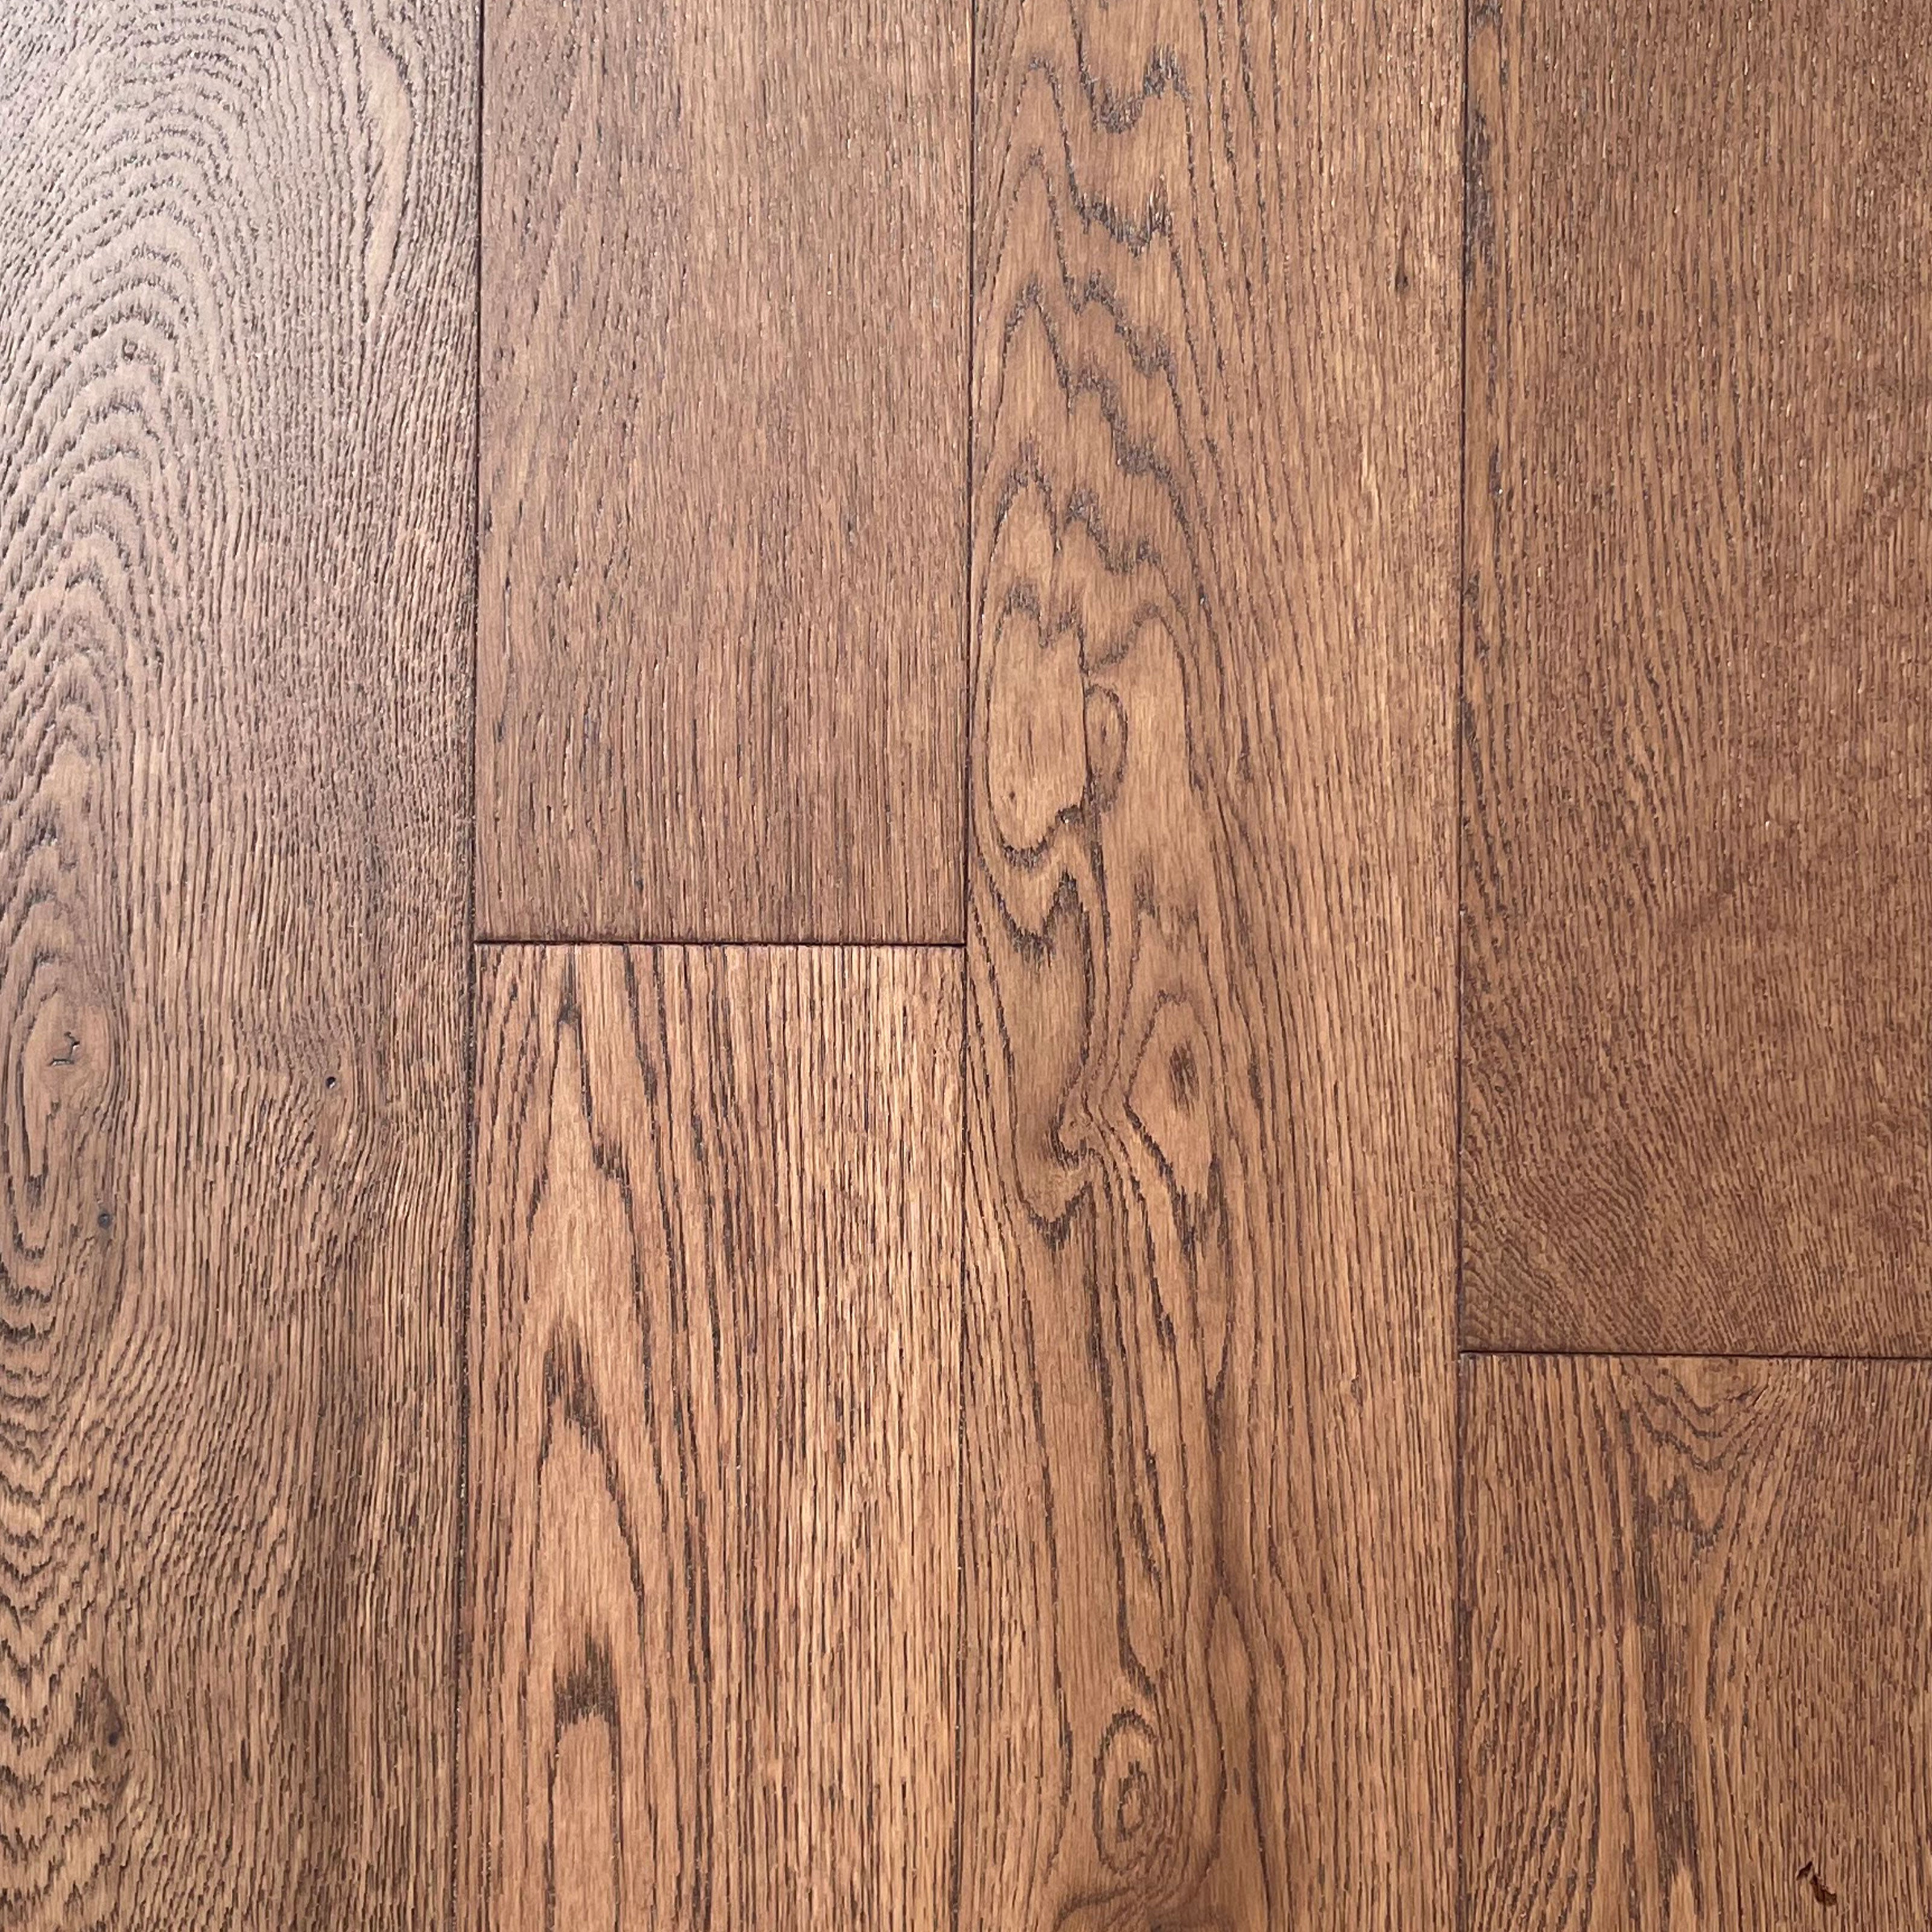 Pavimento in legno di rovere prefinito verniciato spazz. 10x125x900 linea PLANET mod. CANYON - Eternal Parquet